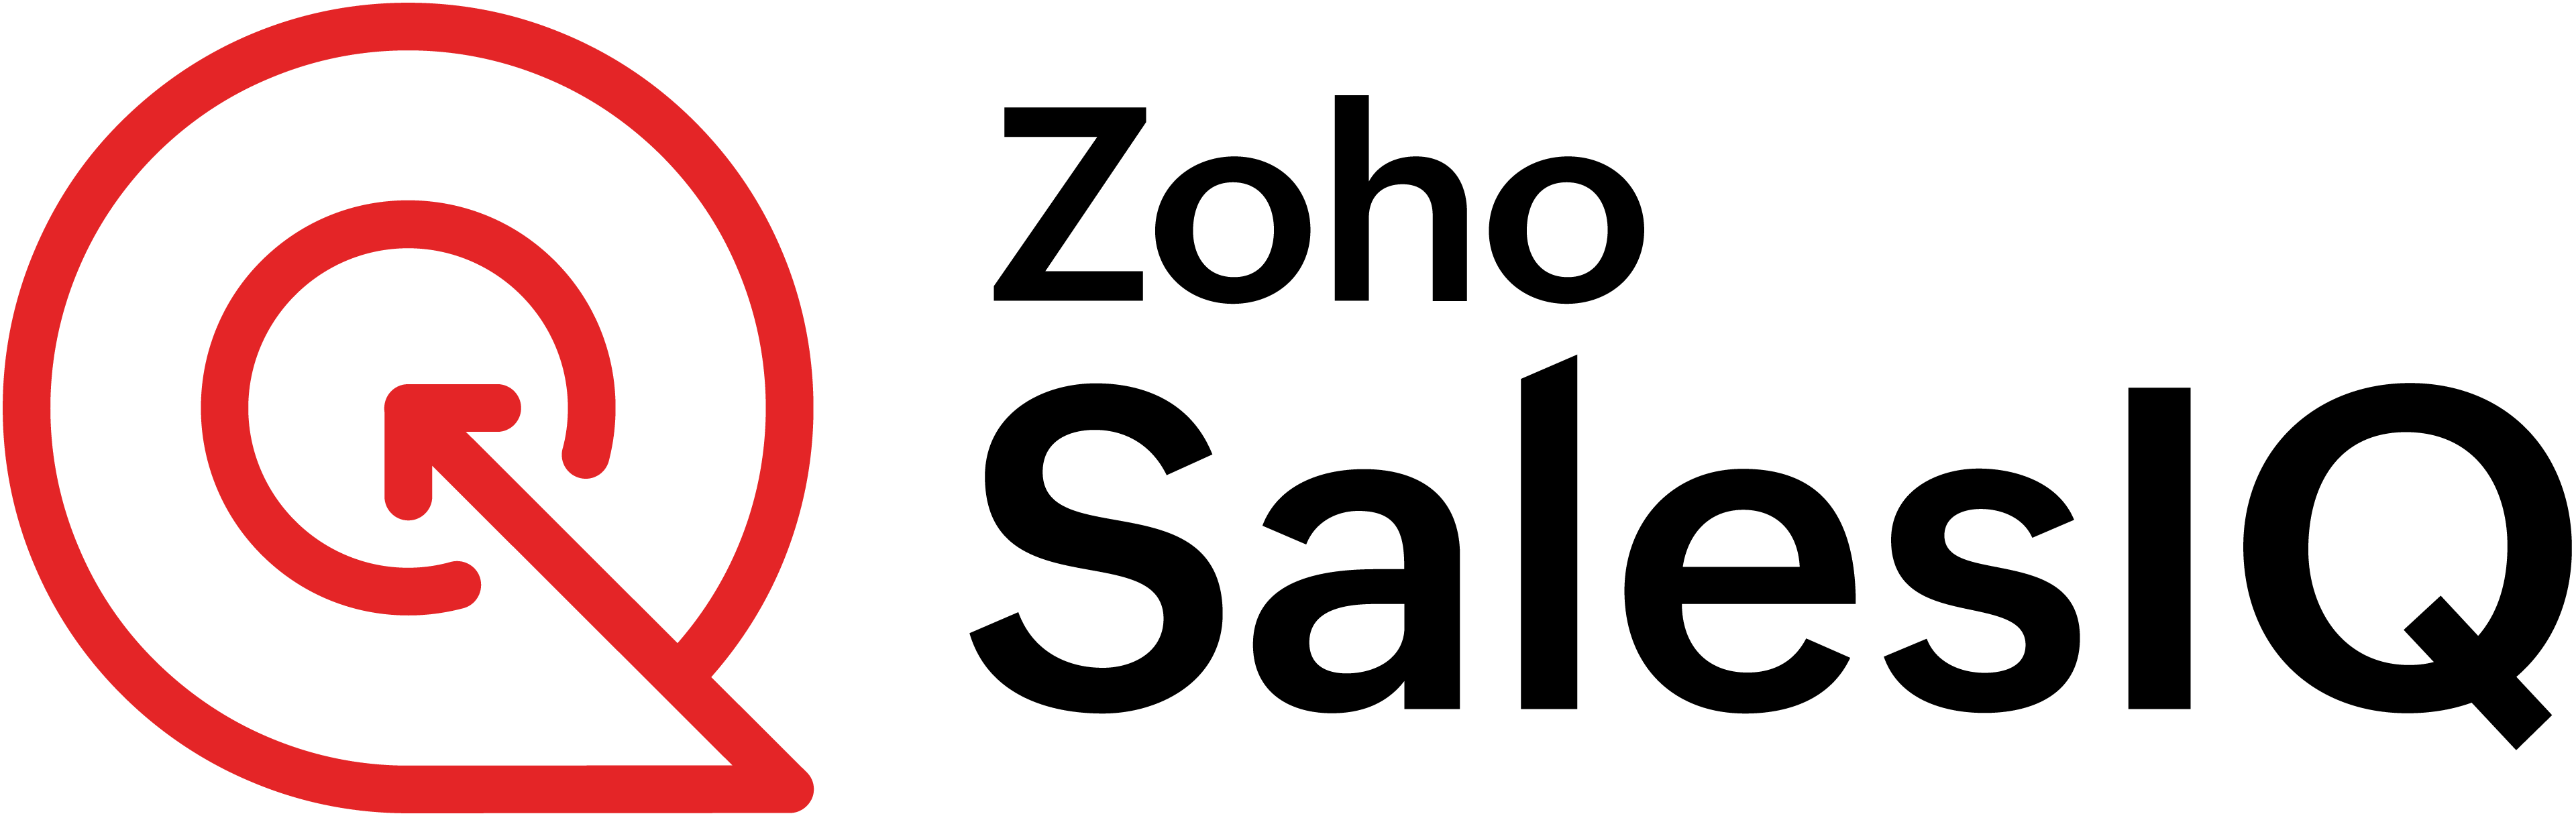 SalesIQ logo